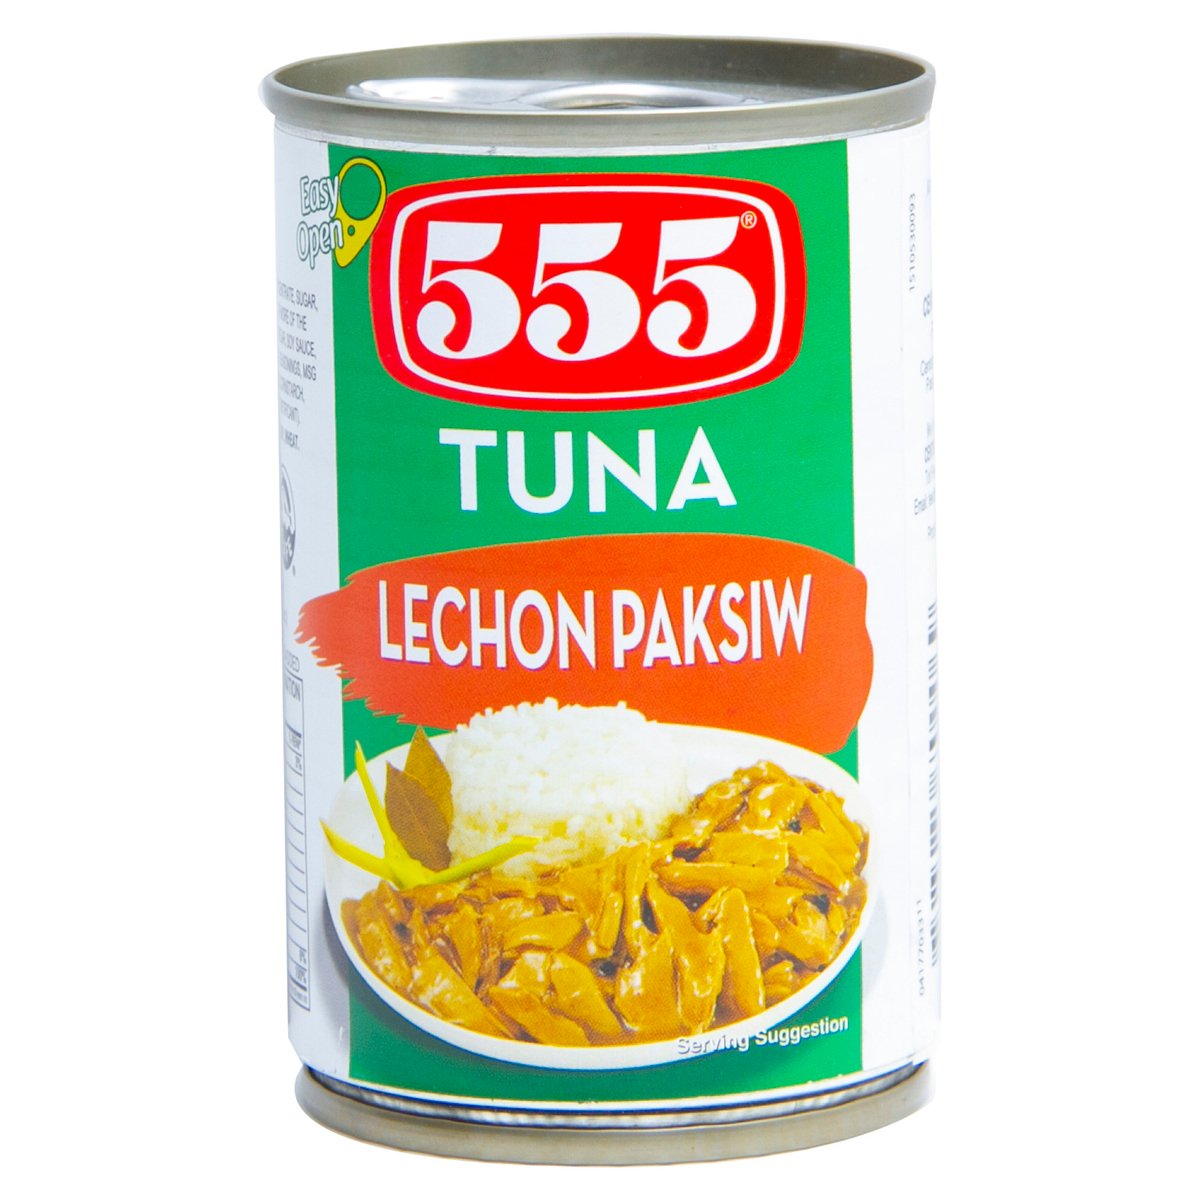 555 Tuna Lechon Paksiw 155 g